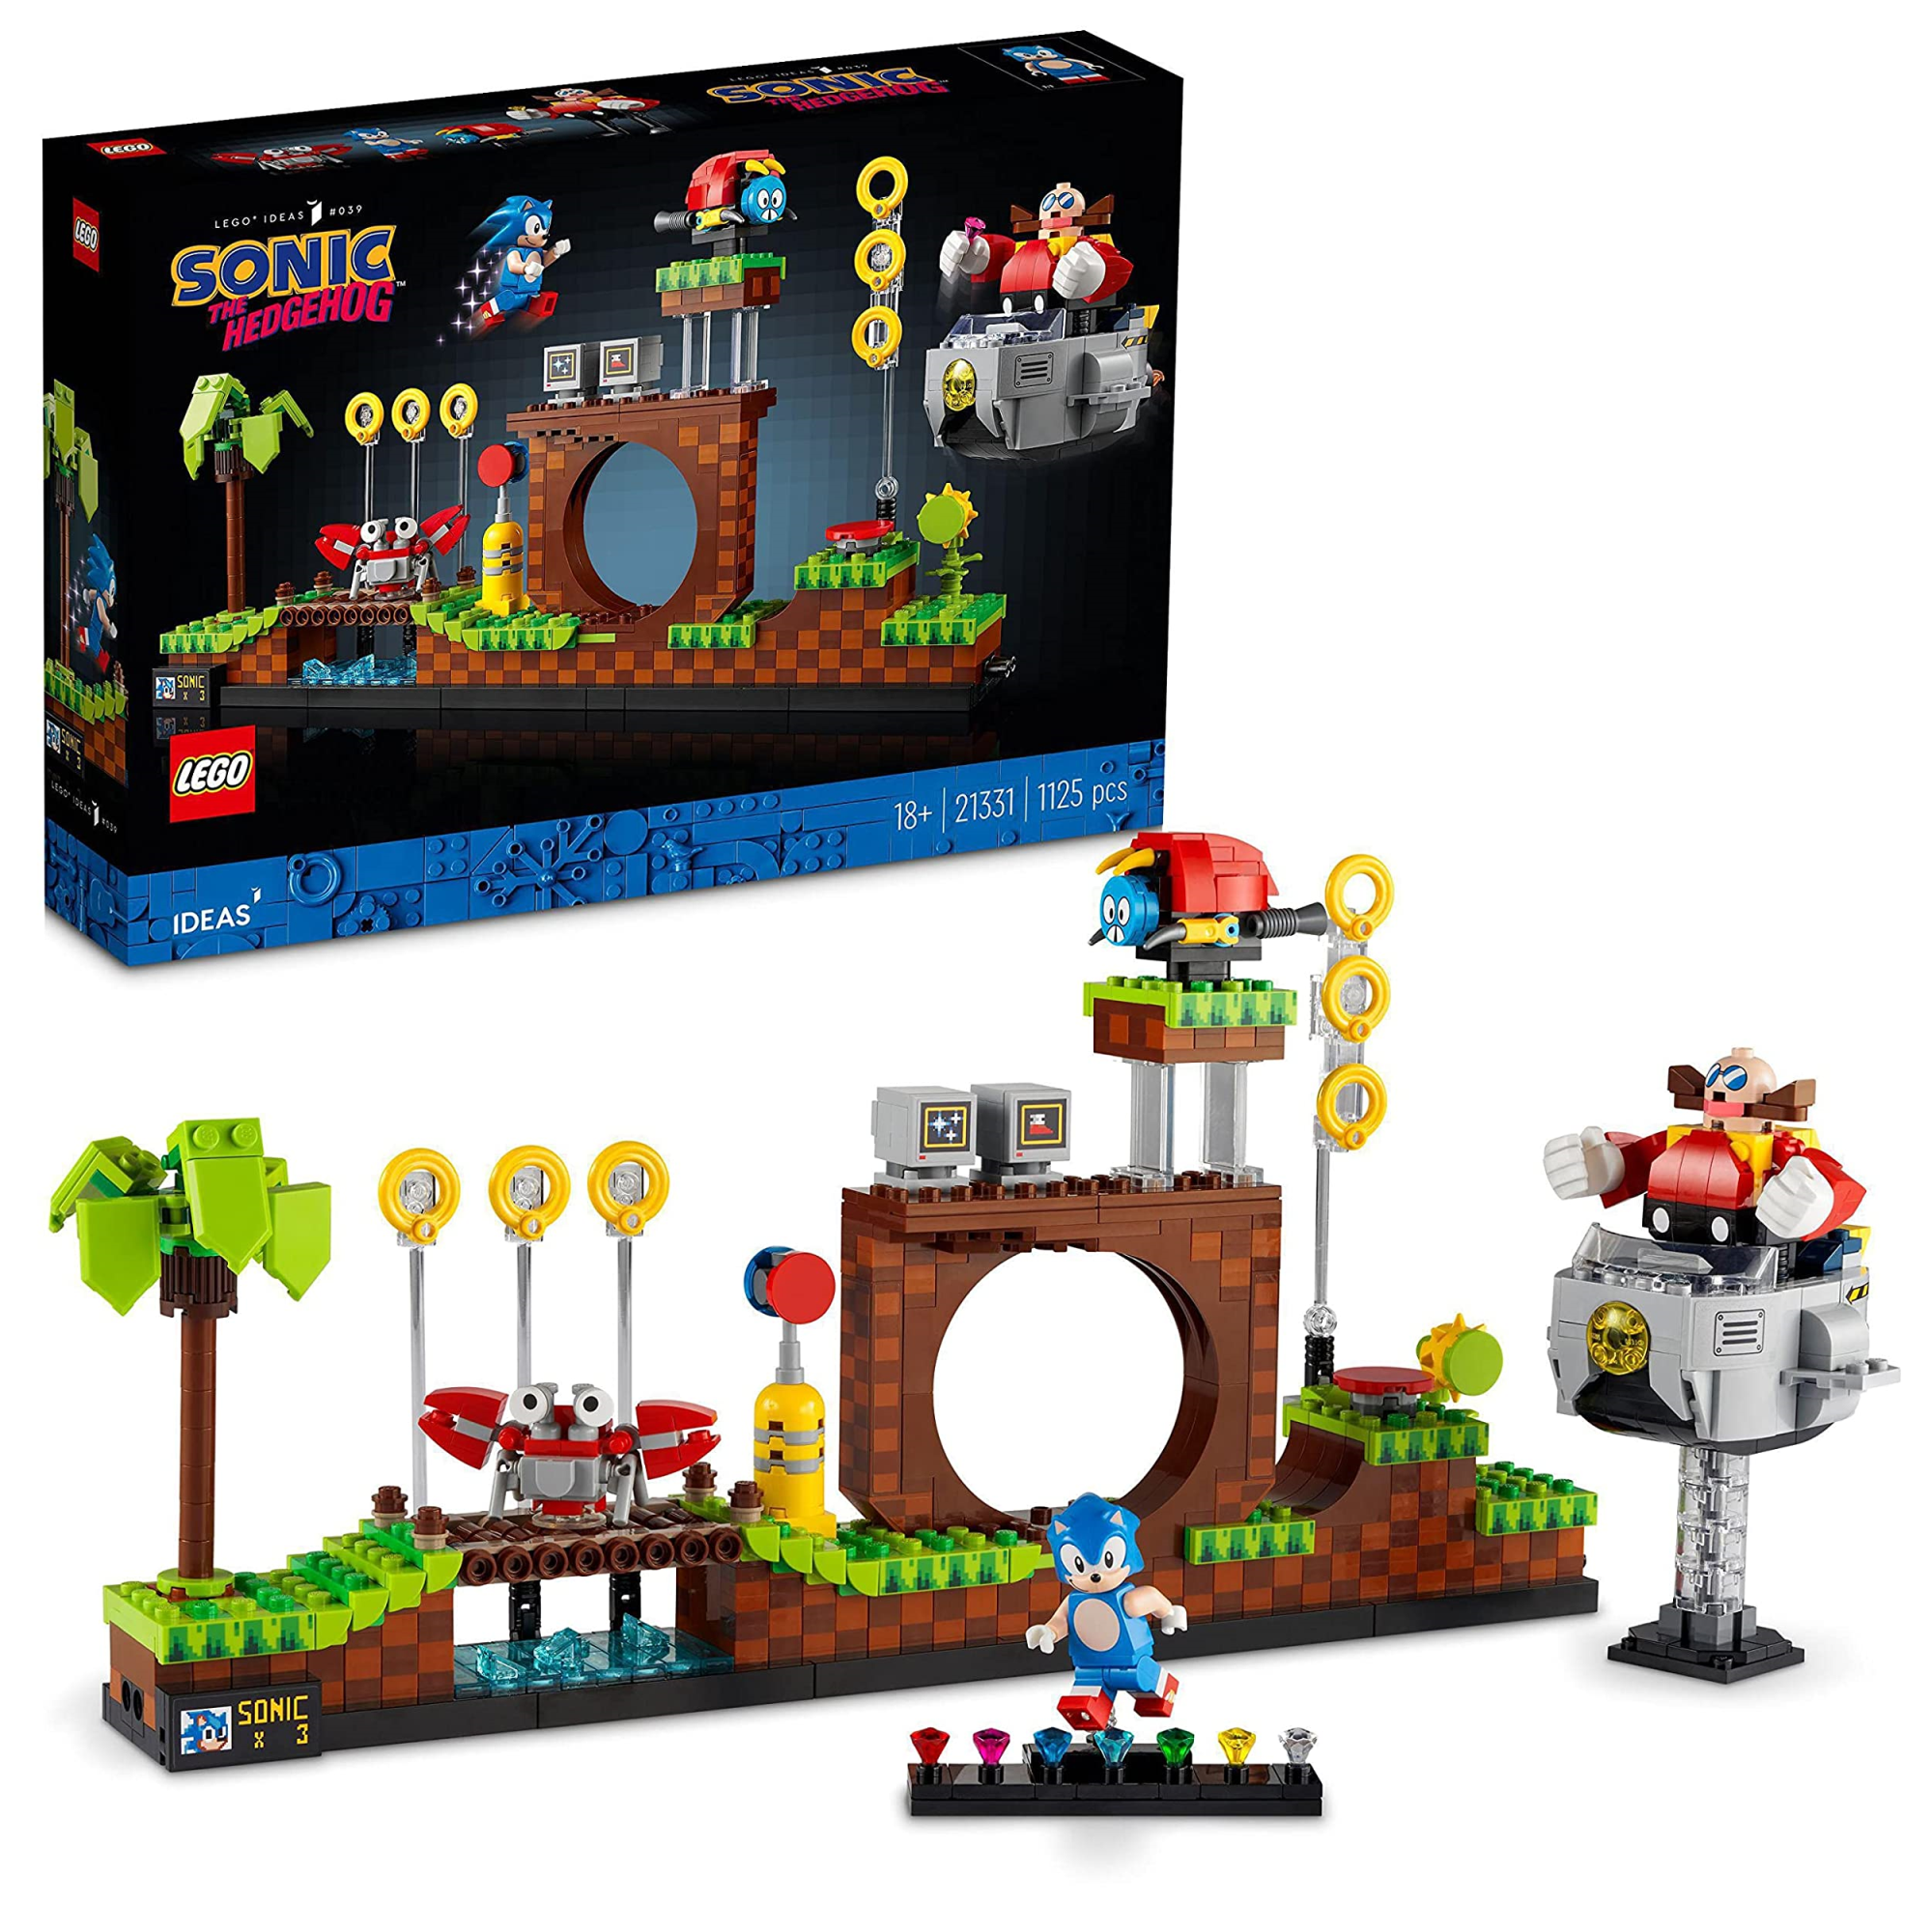 Merchandising Lego: 21331 - Ideas - Sonic NUOVO SIGILLATO, EDIZIONE DEL 06/04/2022 SUBITO DISPONIBILE